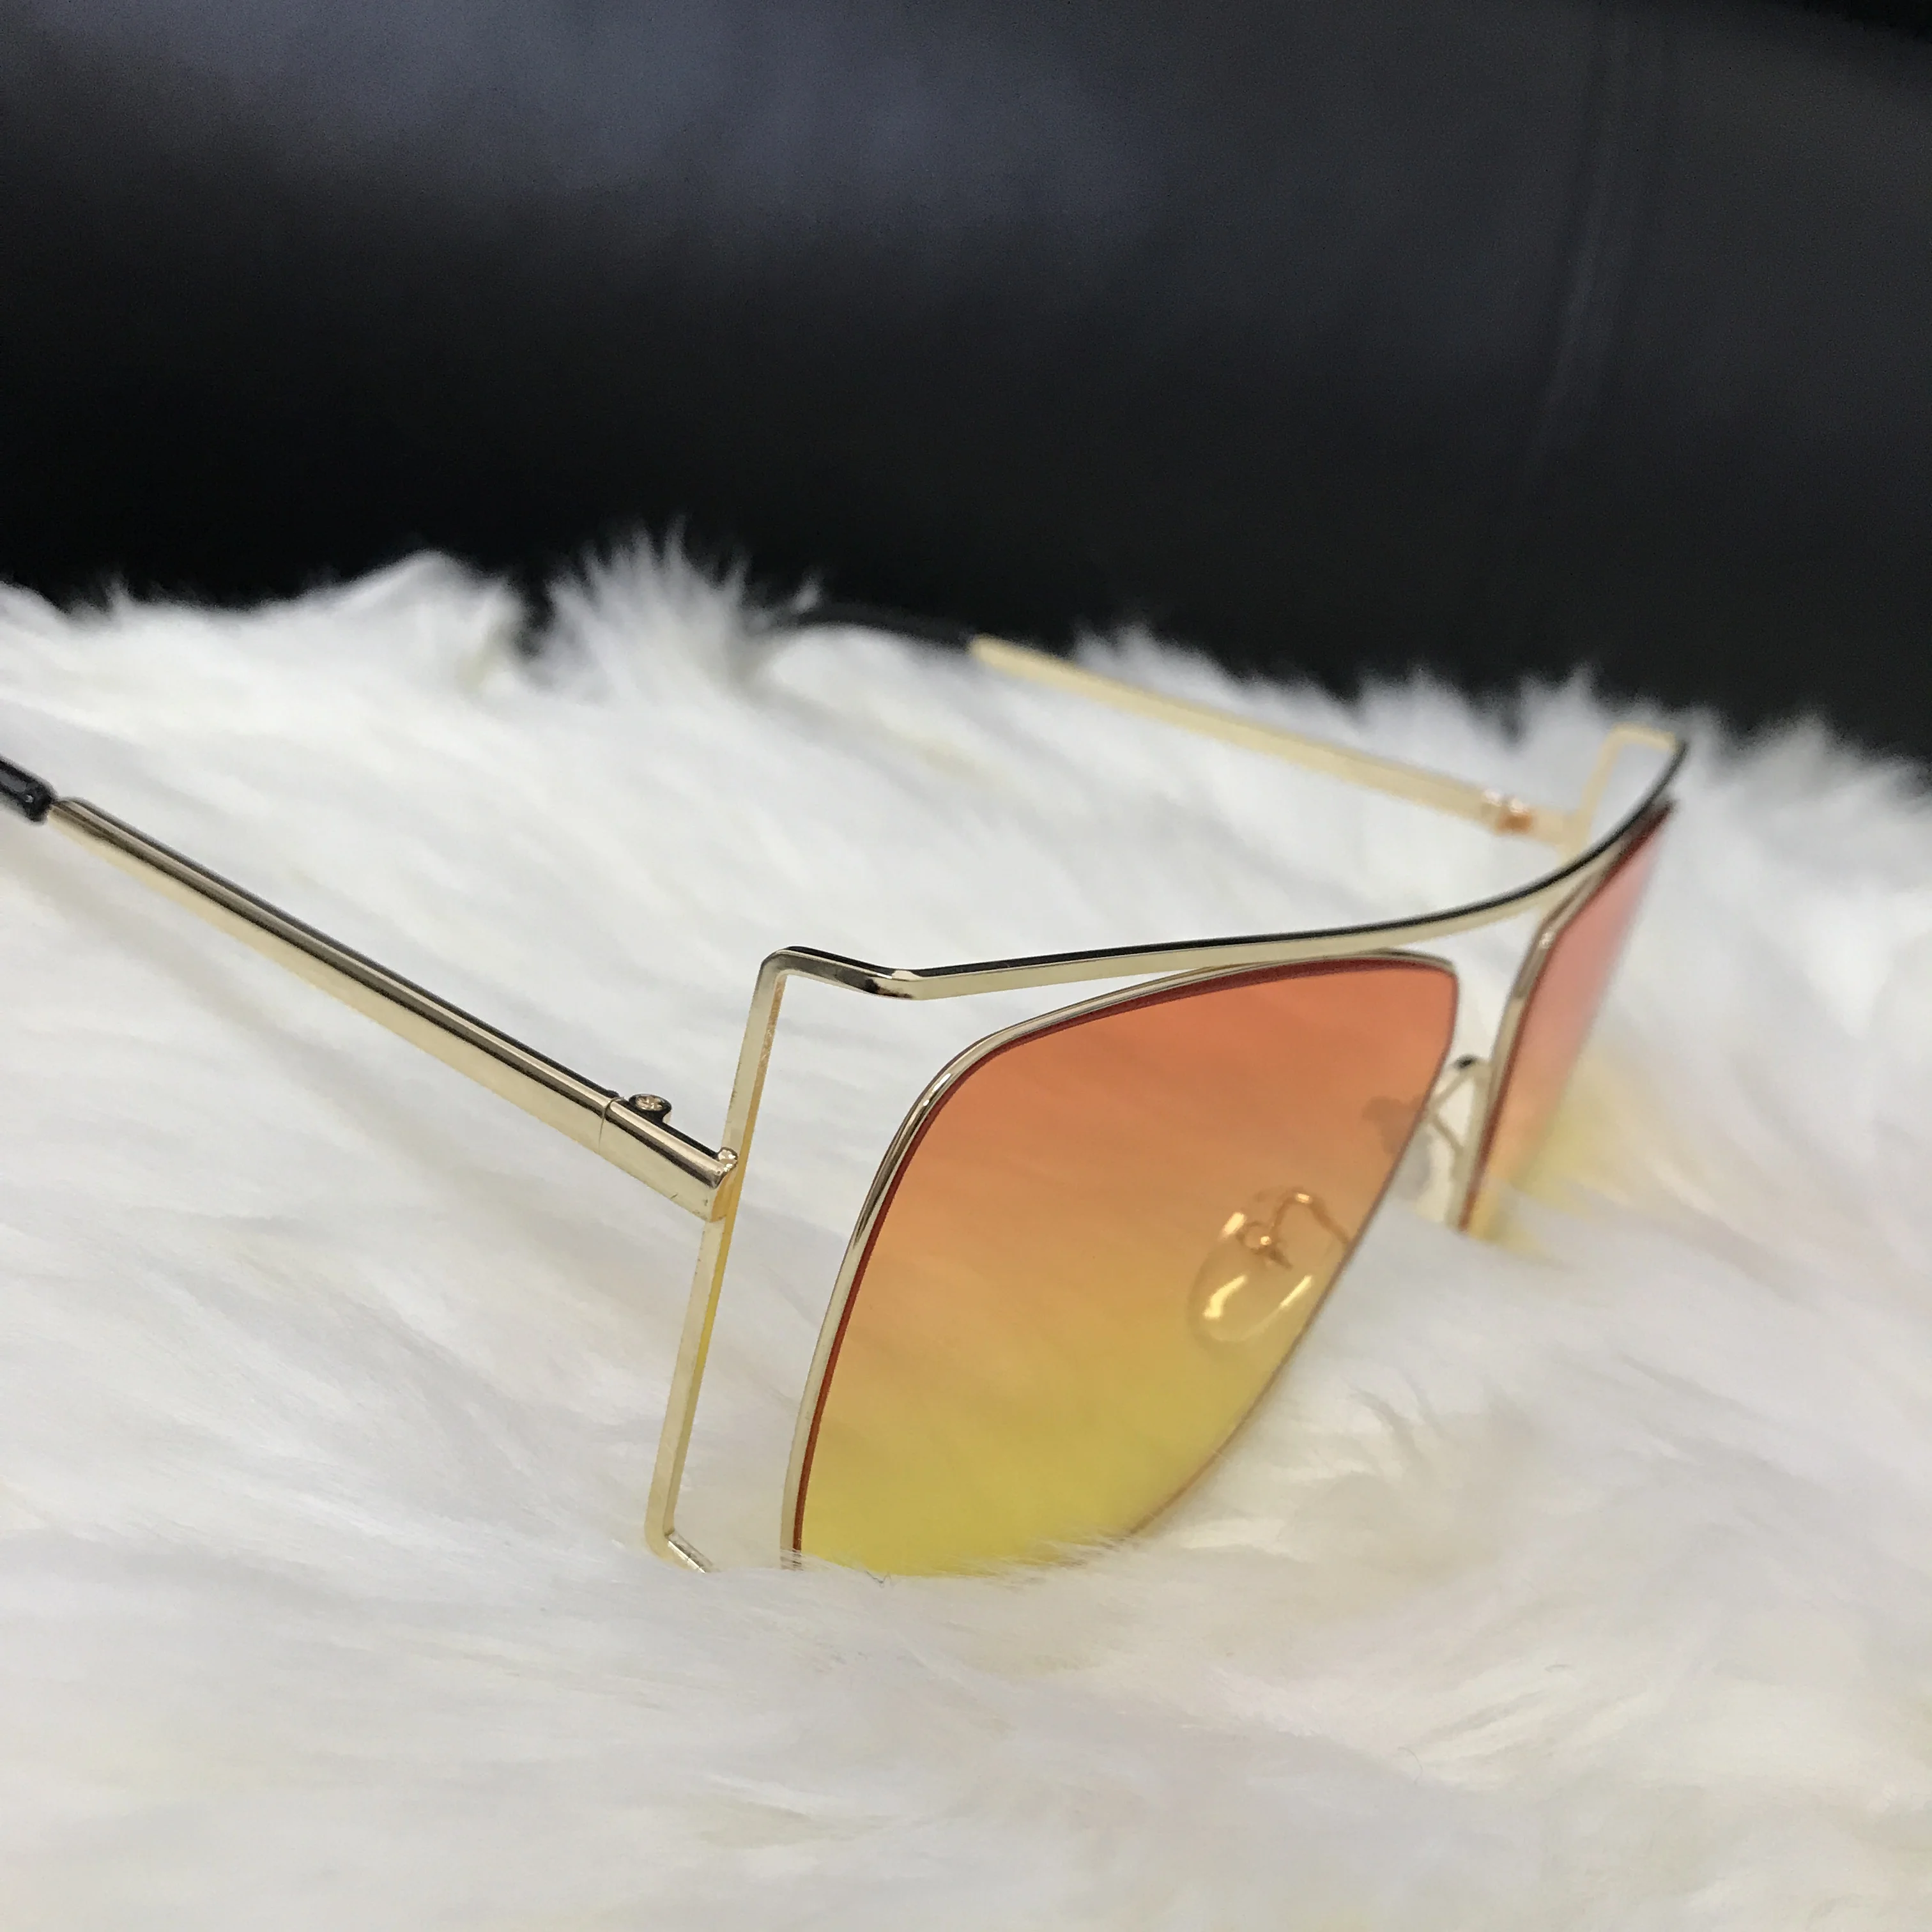 Emosnia оправы золотистые женские прозрачные солнцезащитные очки Для мужчин Брендовая Дизайнерская обувь пилот, солнцезащитные очки с большой оправой солнцезащитные очки с вогнуто-выпуклыми линзами, женские очки с оправой